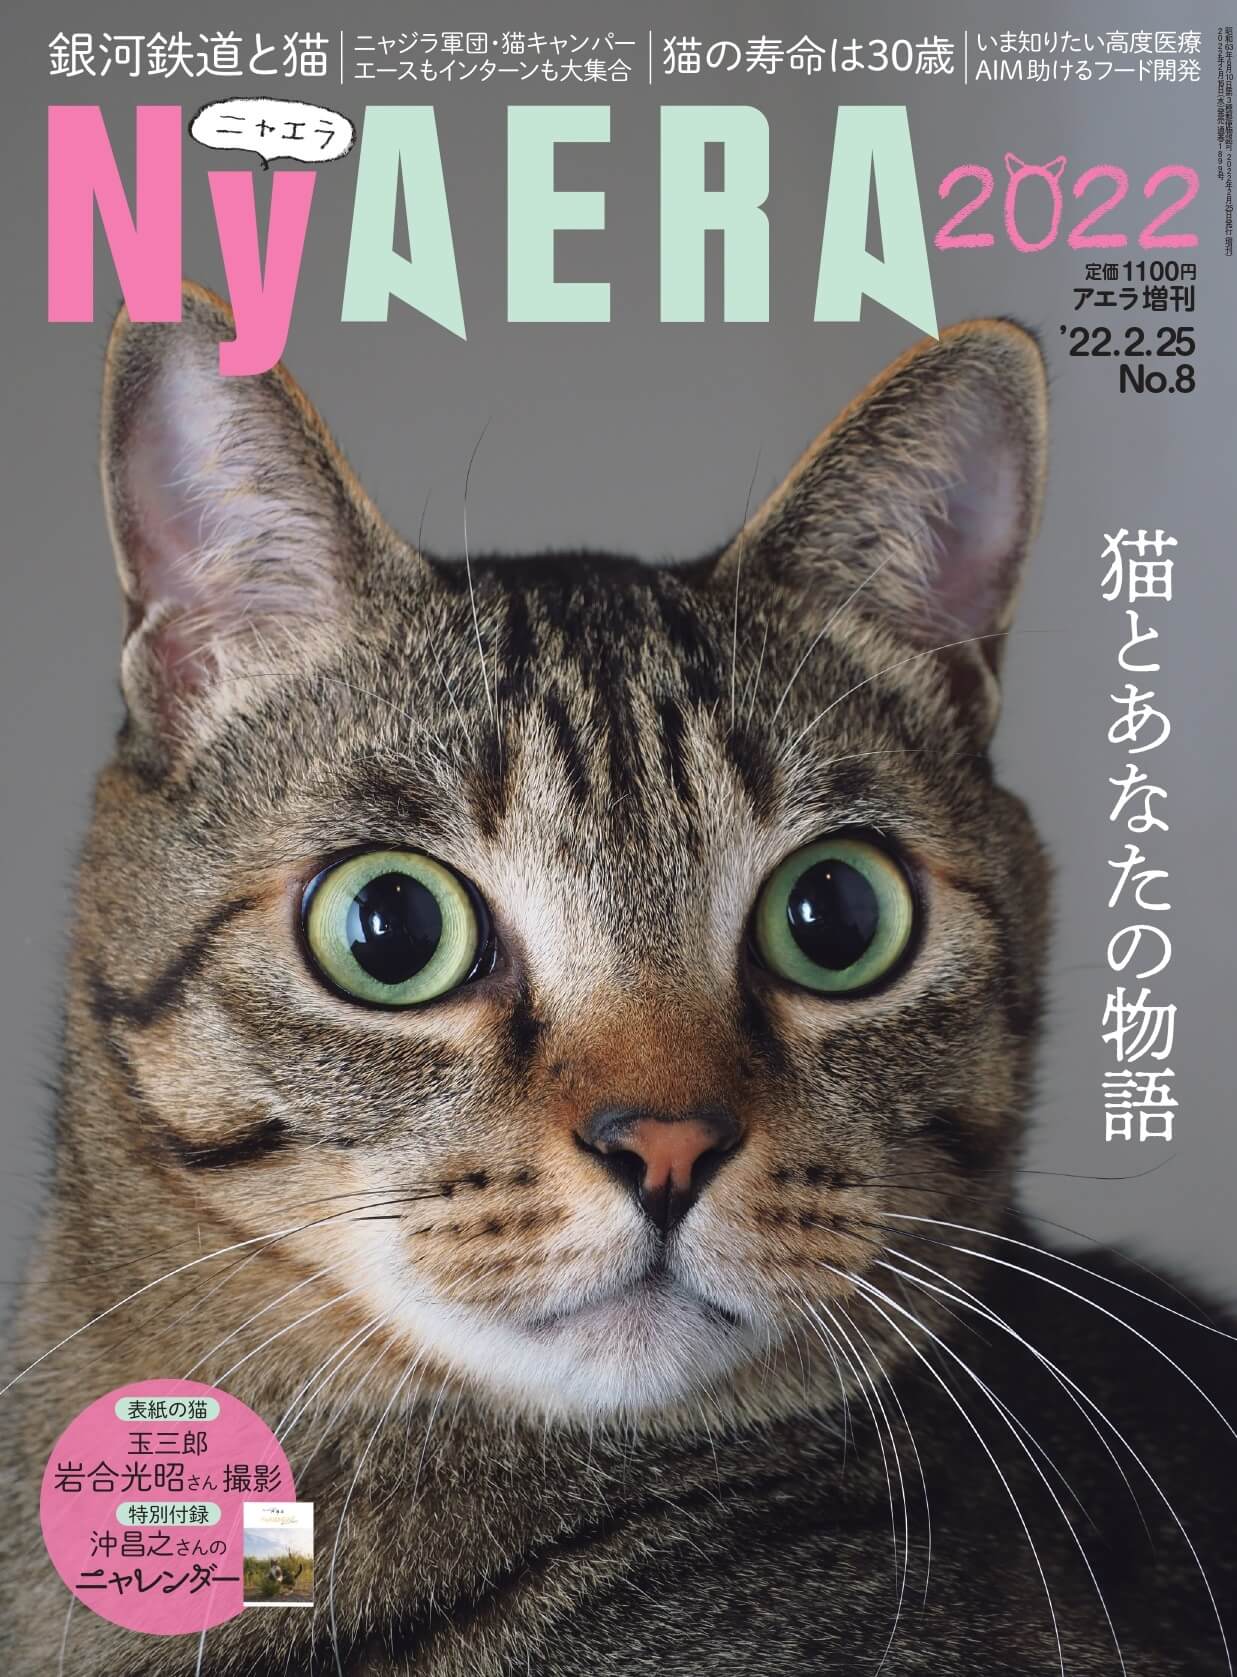 猫雑誌「NyAERA(ニャエラ) AERA増刊 2022 」表紙イメージ